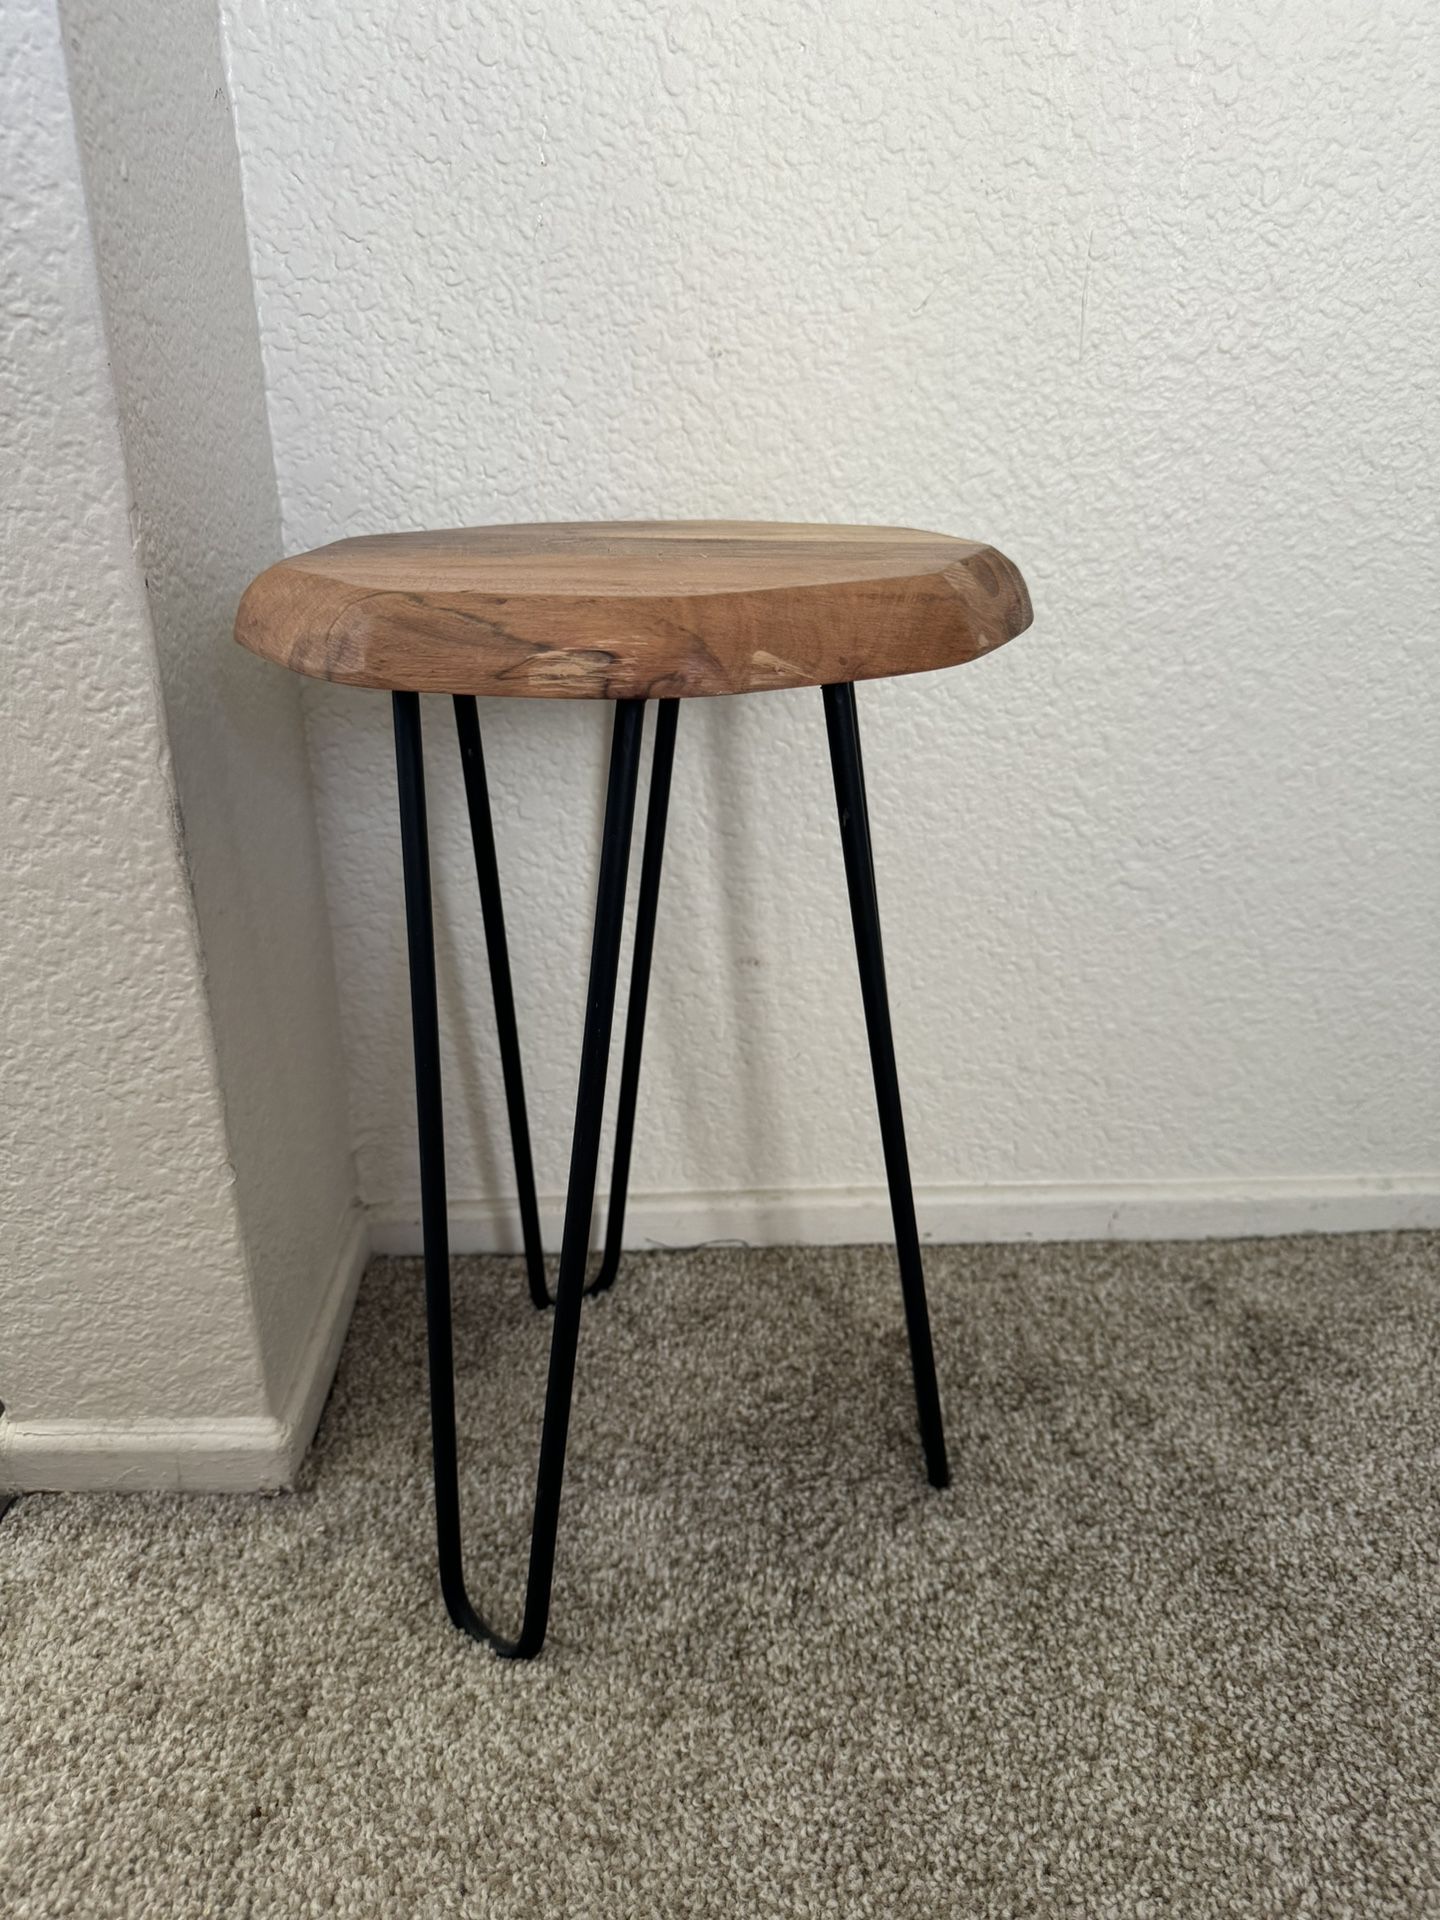 Small stool 